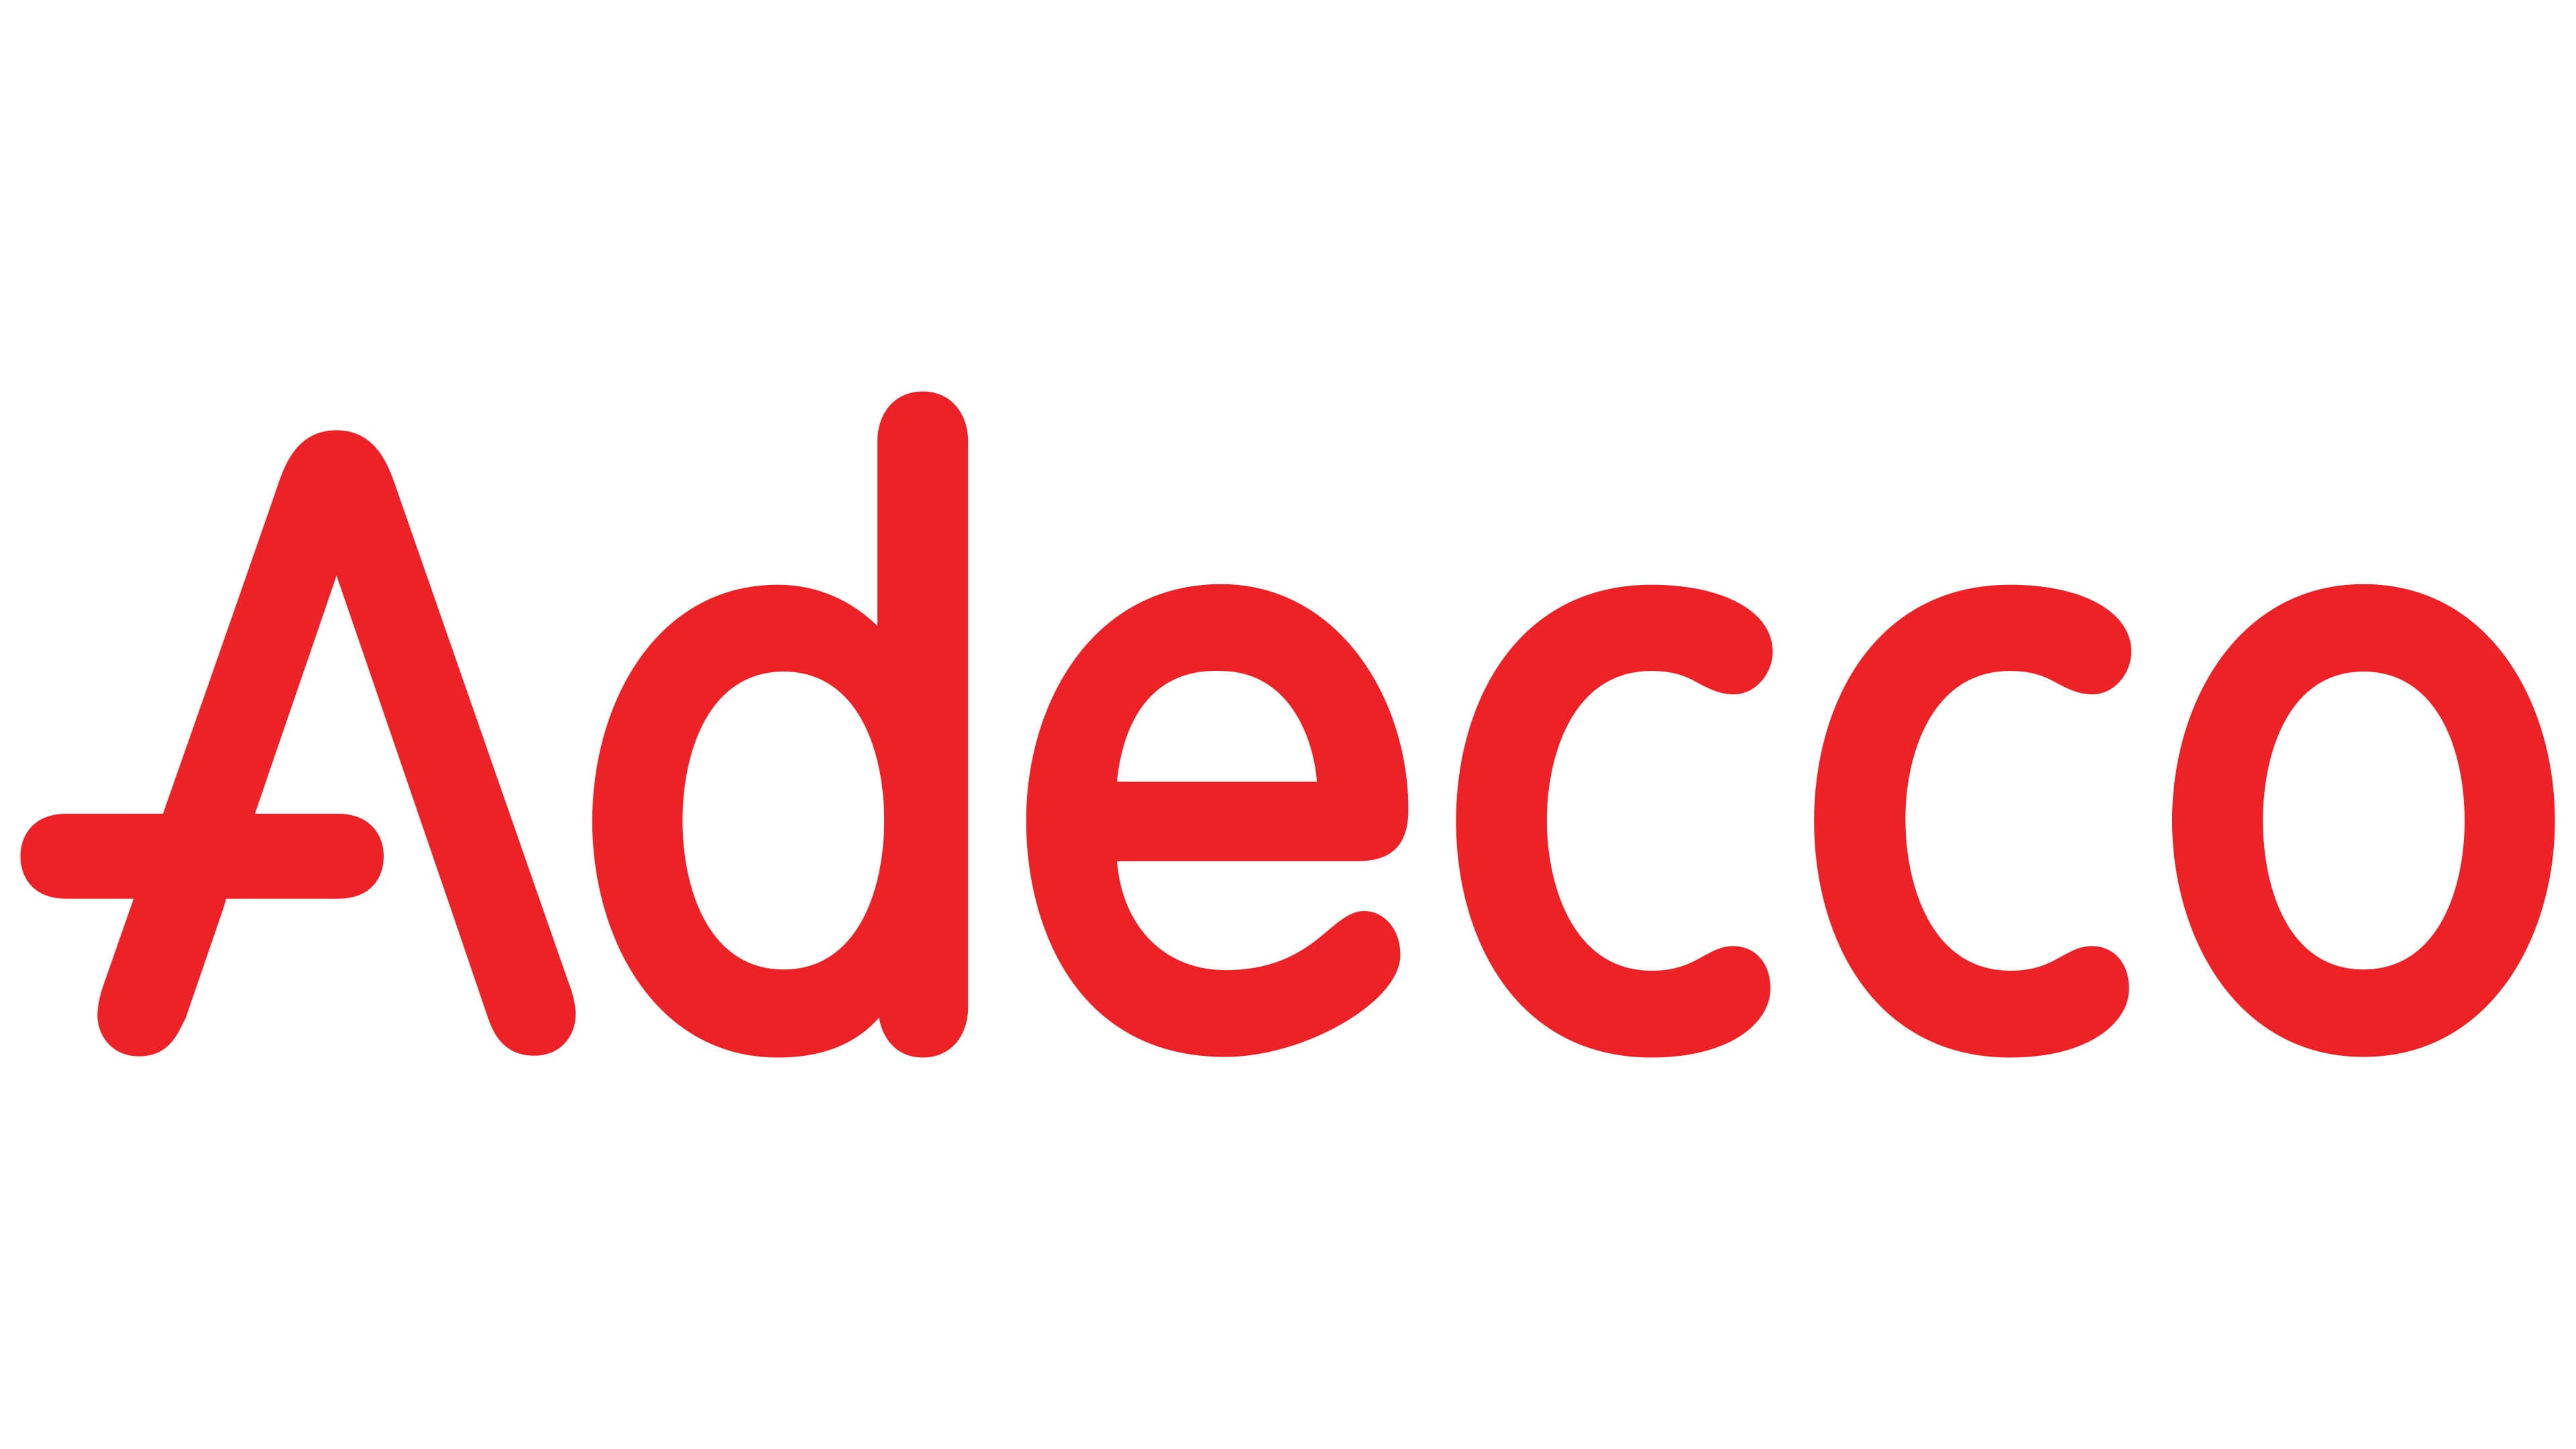 Adecco logo Stock Photos, Royalty Free Adecco logo Images | Depositphotos